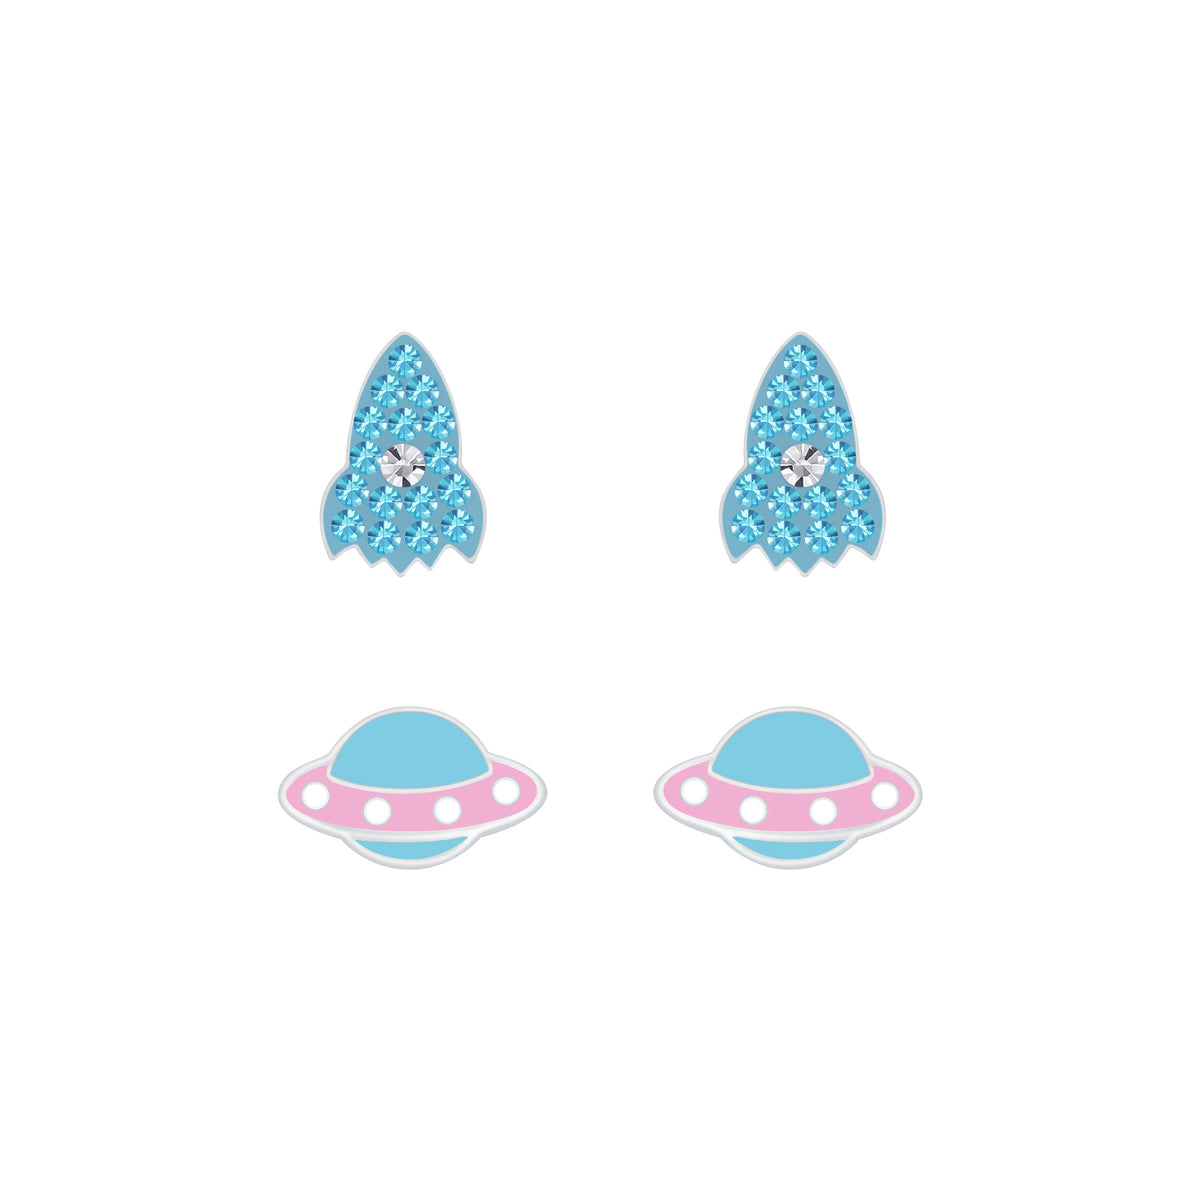 Rocket & UFO Set (2 pairs)